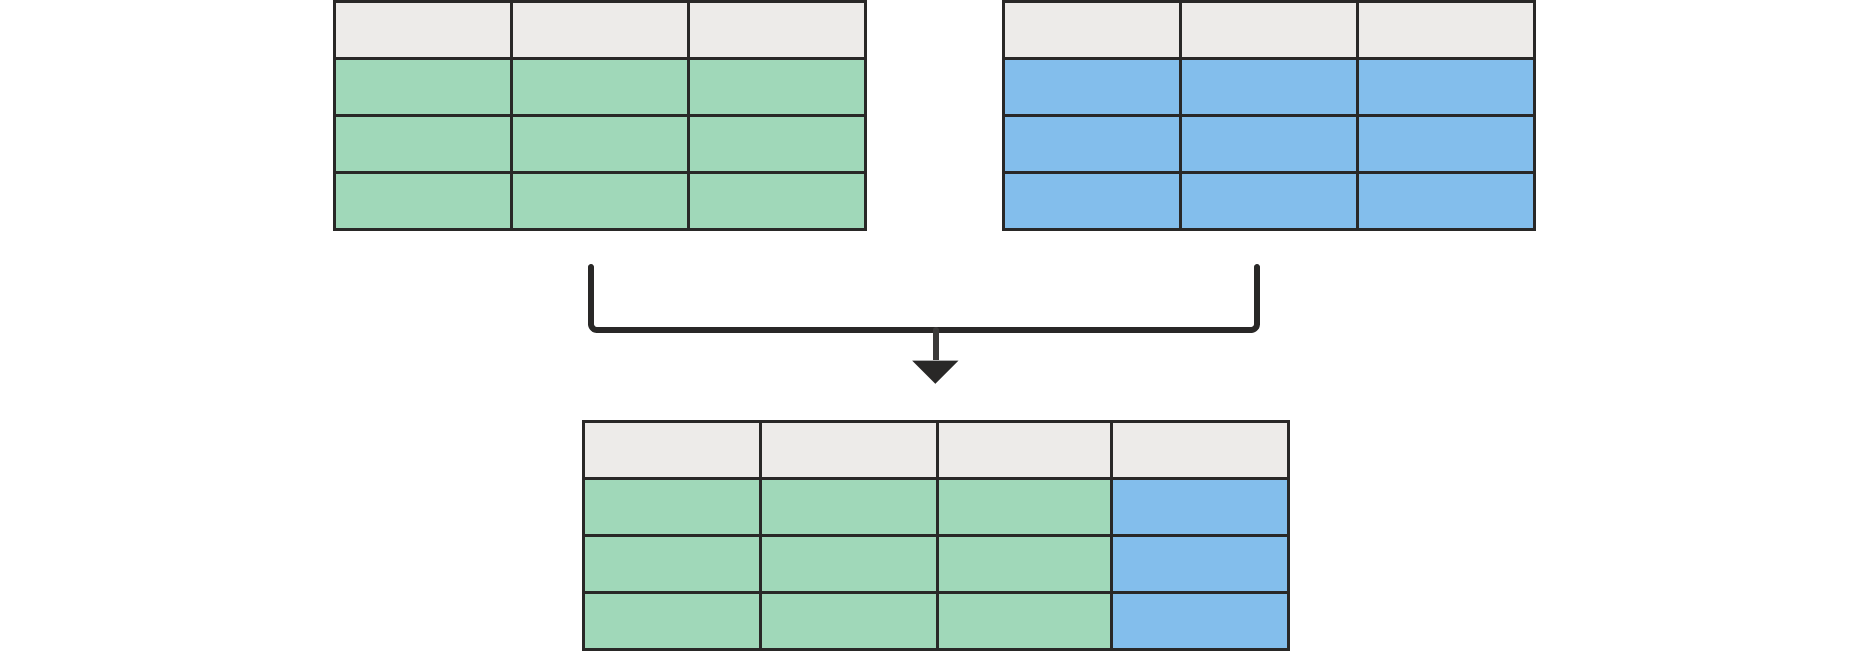 Két üres táblát ábrázoló diagram, amelyek felül egyesítve jelennek meg egy alul lévő táblával, a bal oldali táblázat összes oszlopával, egy pedig a jobb oldali táblázattal.